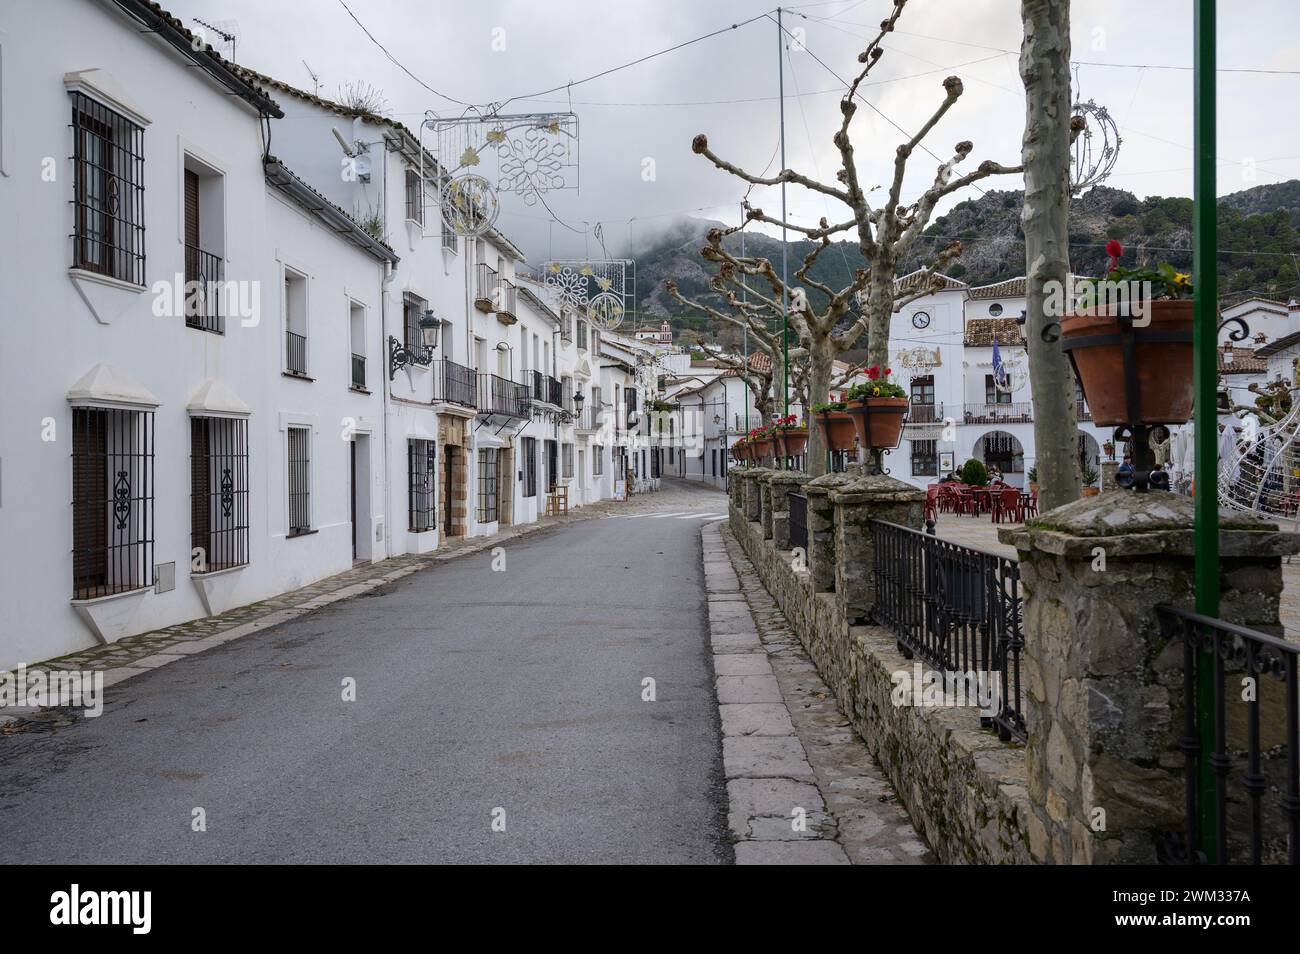 Typiques rues étroites et très jolies d'un village andalou avec des maisons blanches à Grazalema, Cadix, Espagne. Banque D'Images